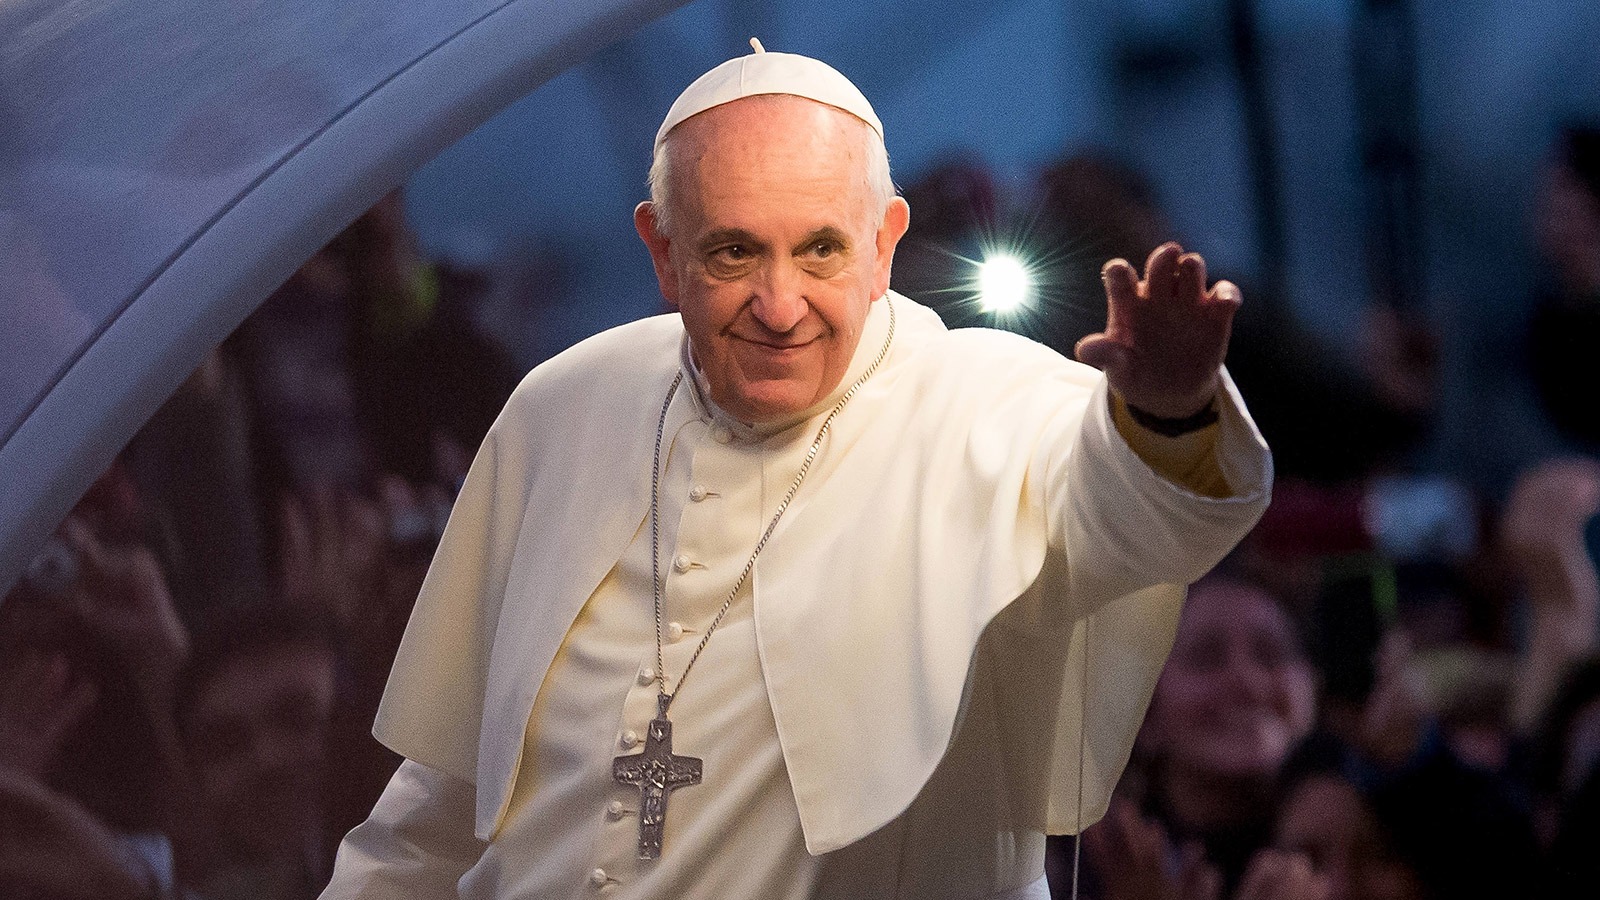 Сын папы римского. Франциск (папа Римский). Понтифик папа Римский Франциск. Франциск (папа Римский) фото. Франциск 1 папа Римский.